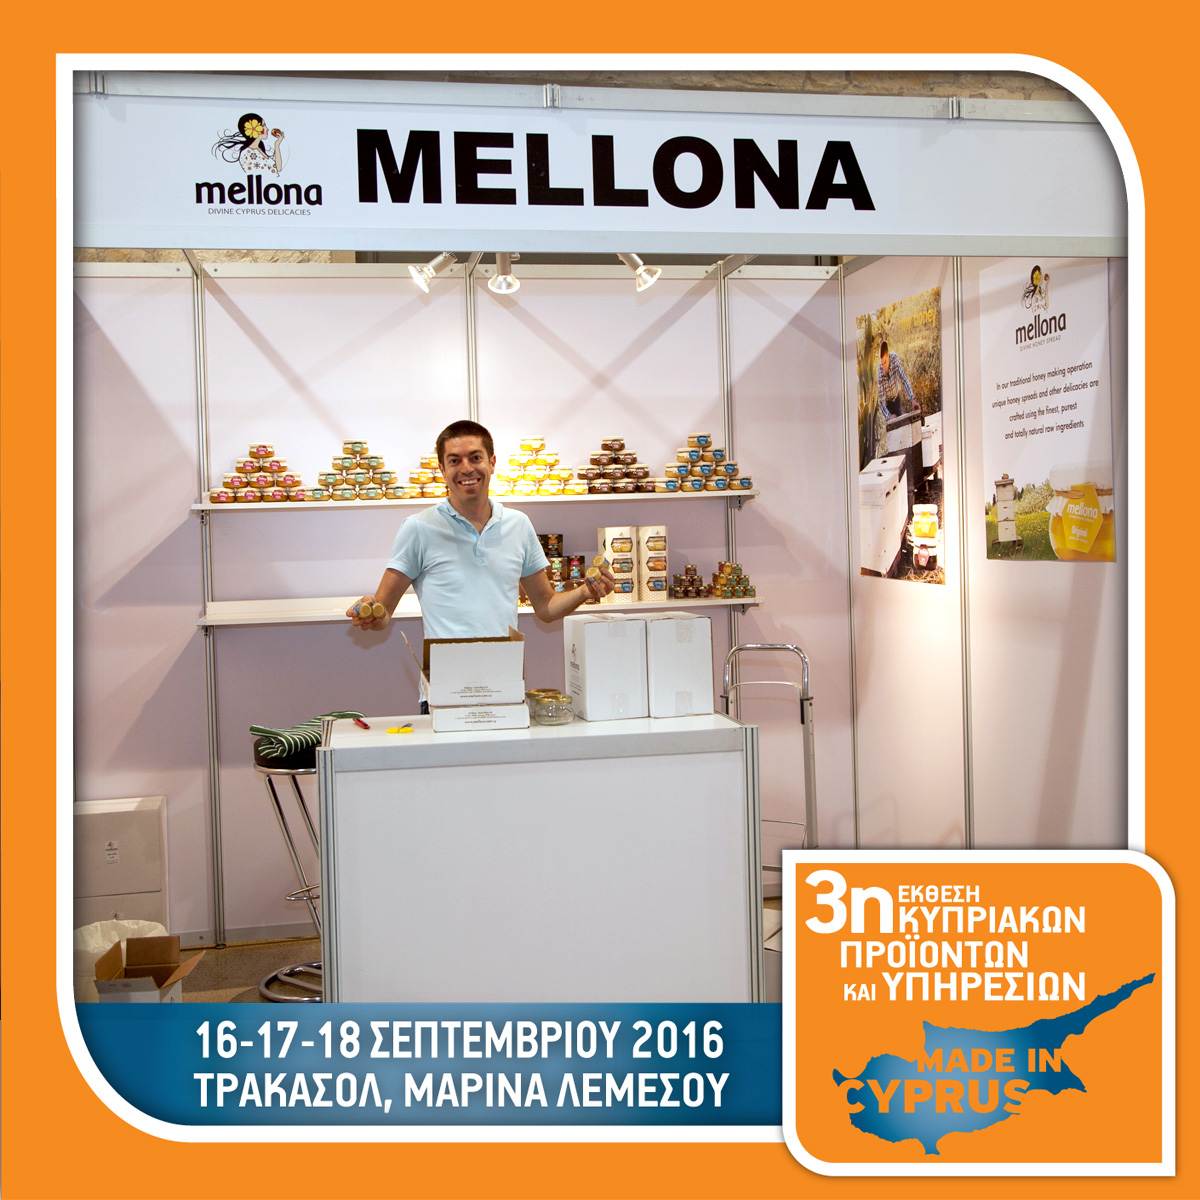 Mellona Honey - Booth No 8